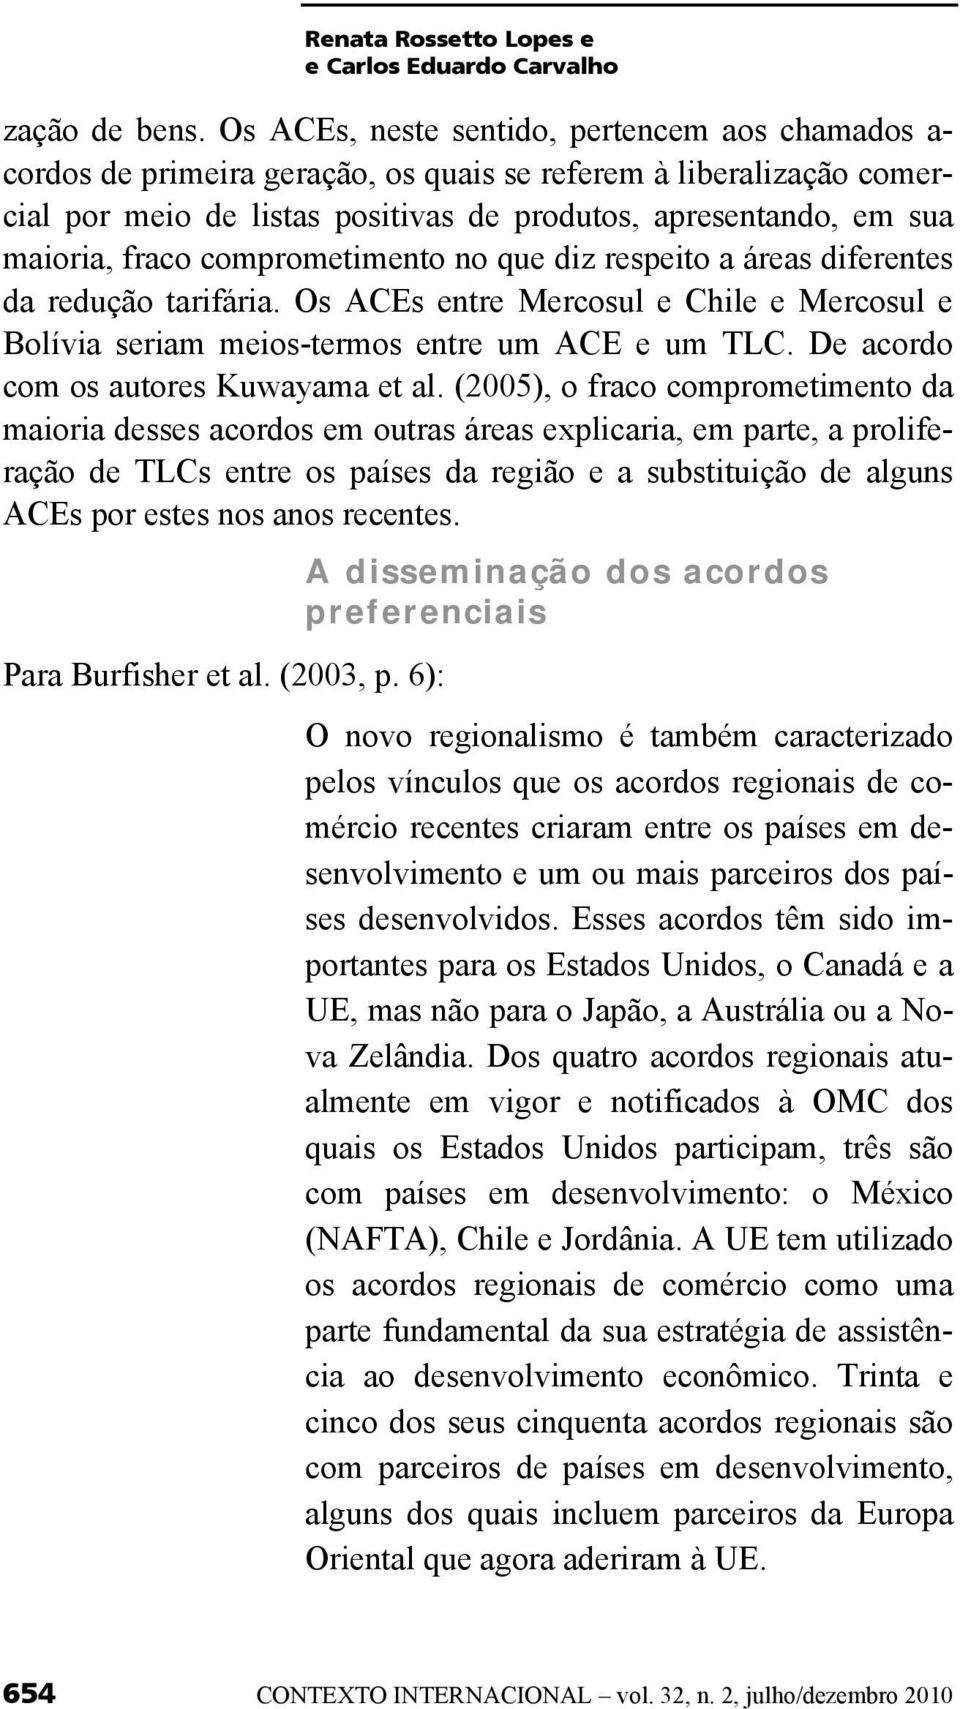 fraco comprometimento no que diz respeito a áreas diferentes da redução tarifária. Os ACEs entre Mercosul e Chile e Mercosul e Bolívia seriam meios-termos entre um ACE e um TLC.